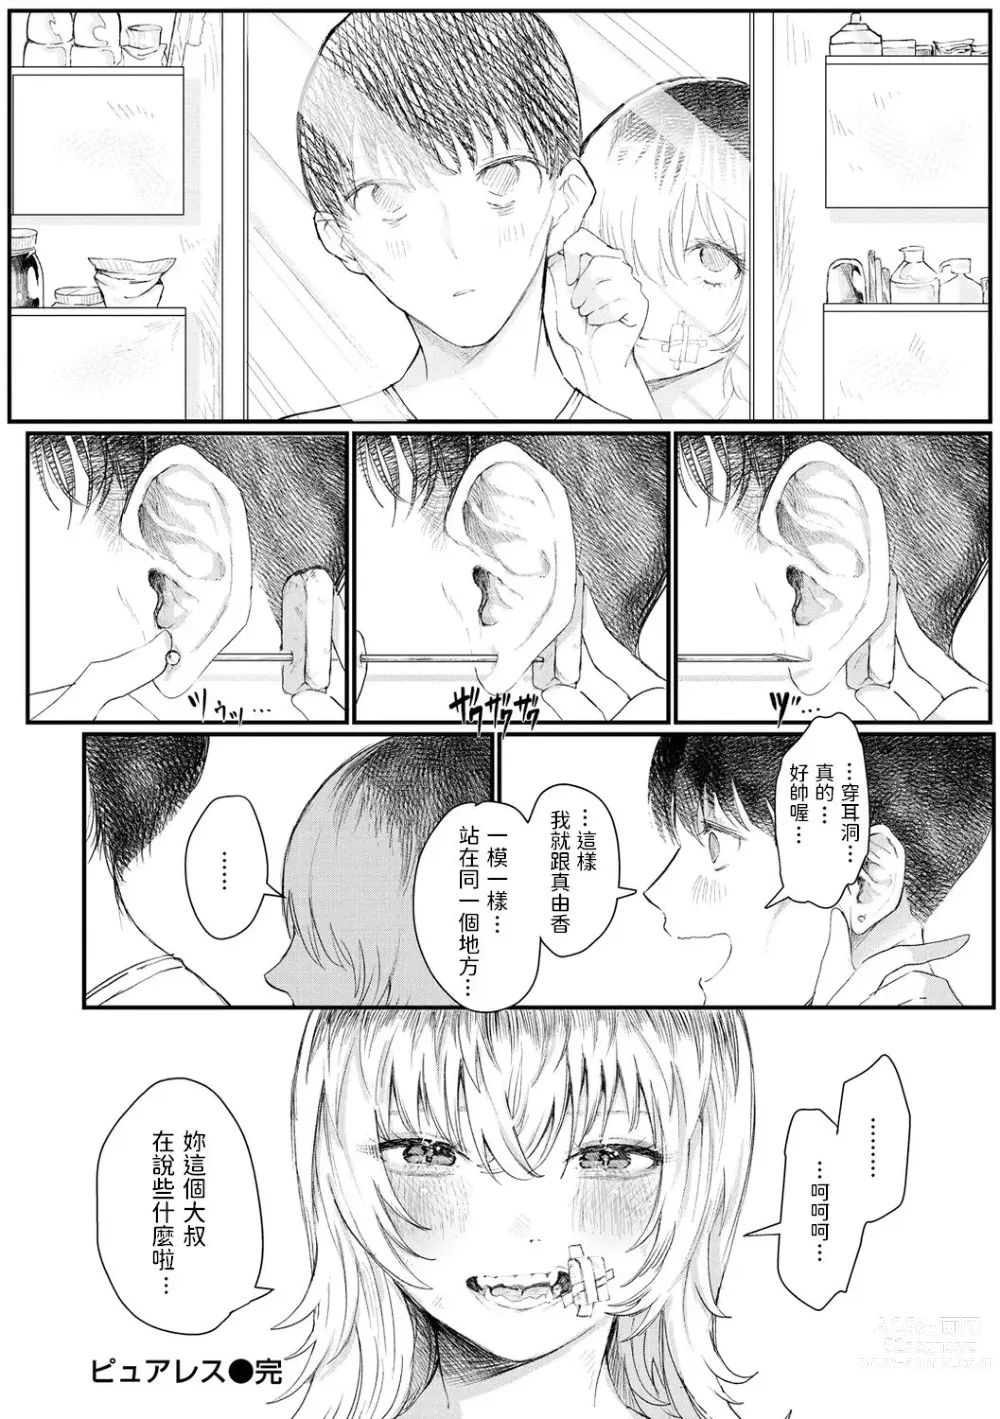 Page 18 of manga Pureless